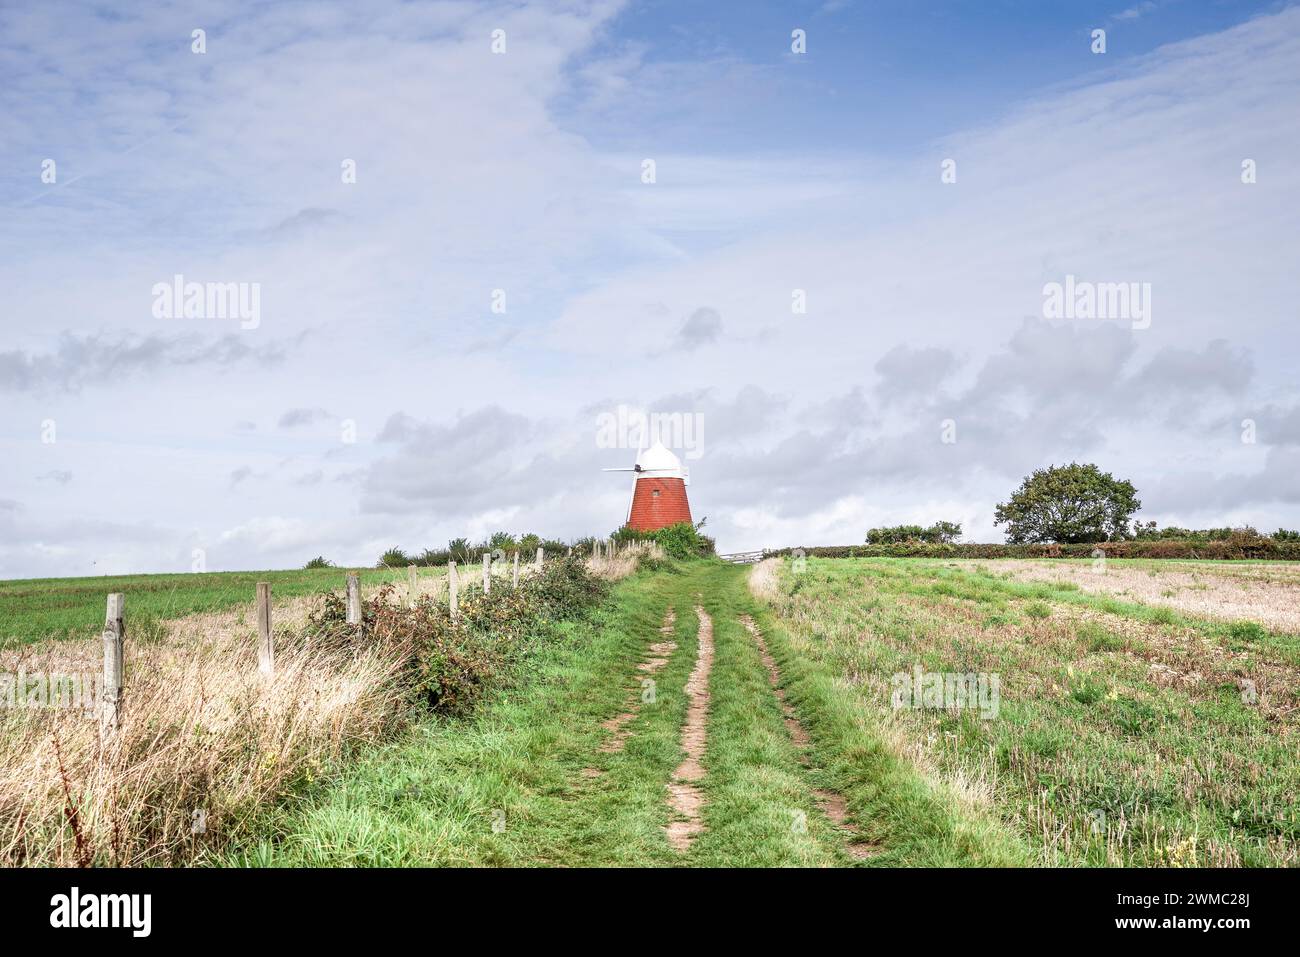 Halnaker Windmill caché dans les champs près de Chichester dans la campagne du Sussex de l'Ouest (Angleterre, Royaume-Uni) Banque D'Images